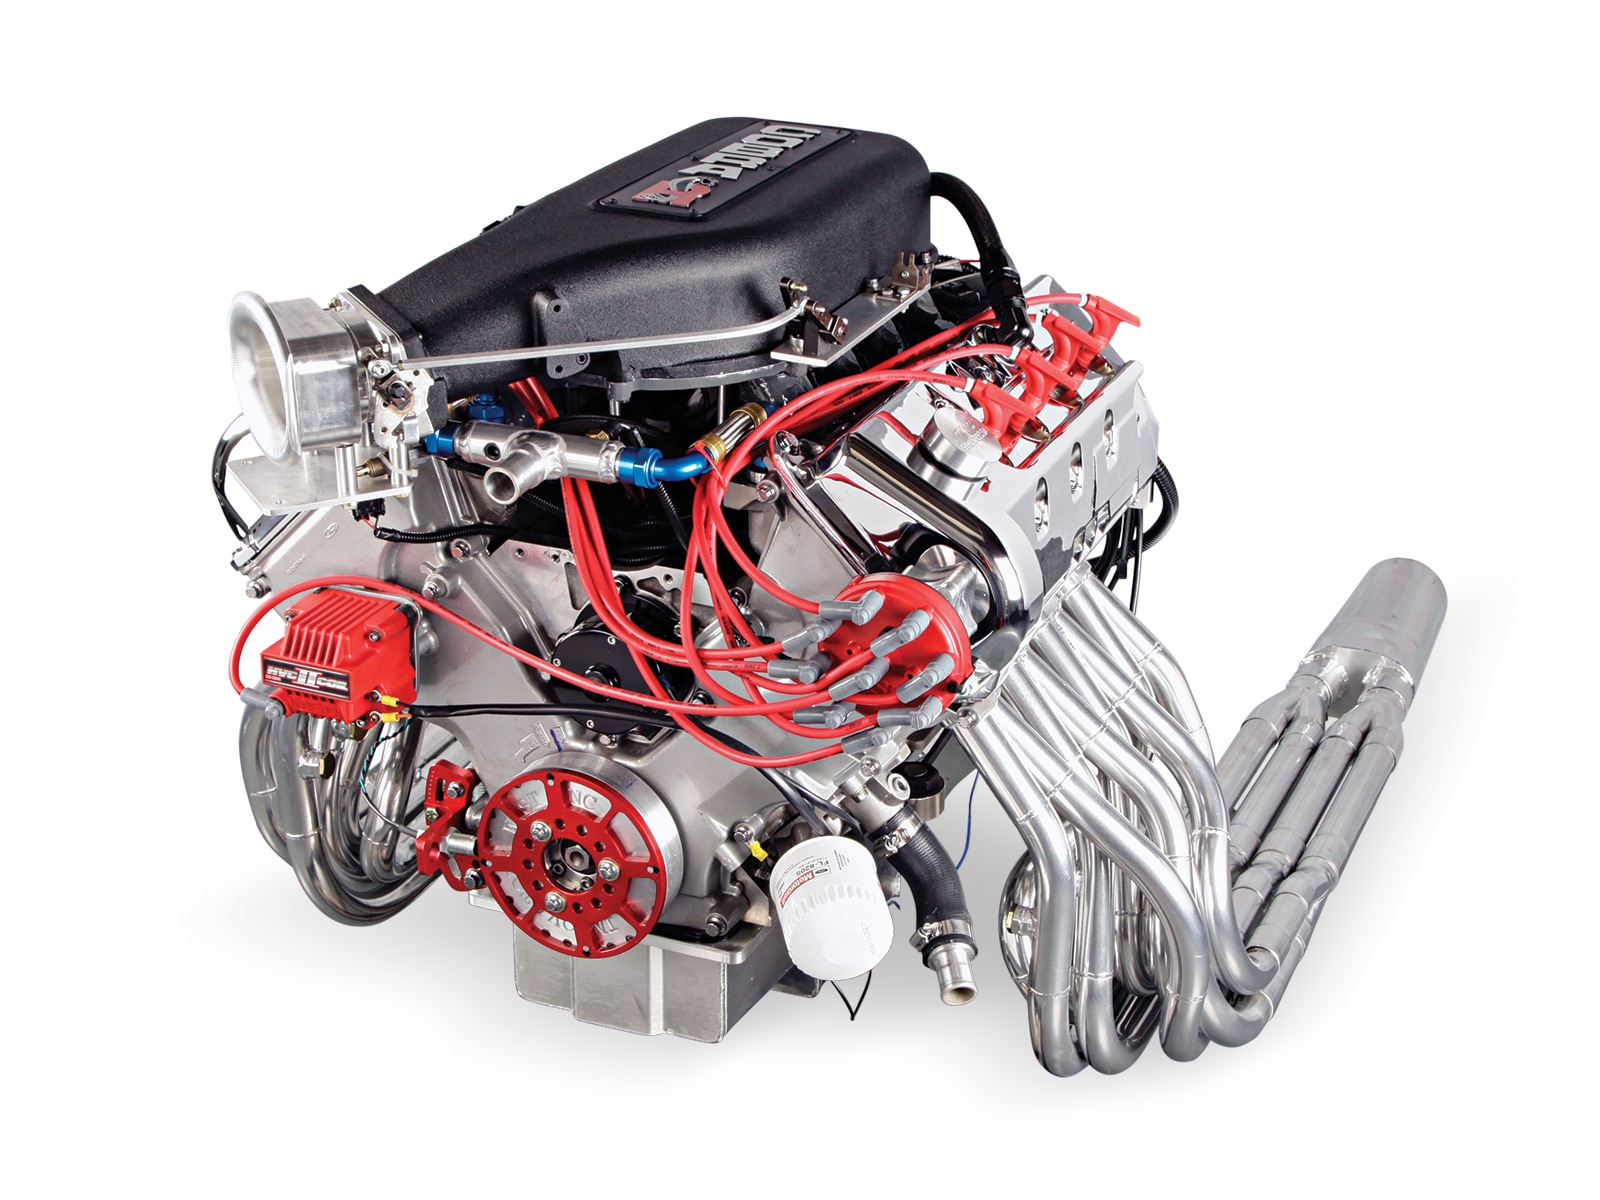 409ci-ford-modular-four-valve-engine.jpg